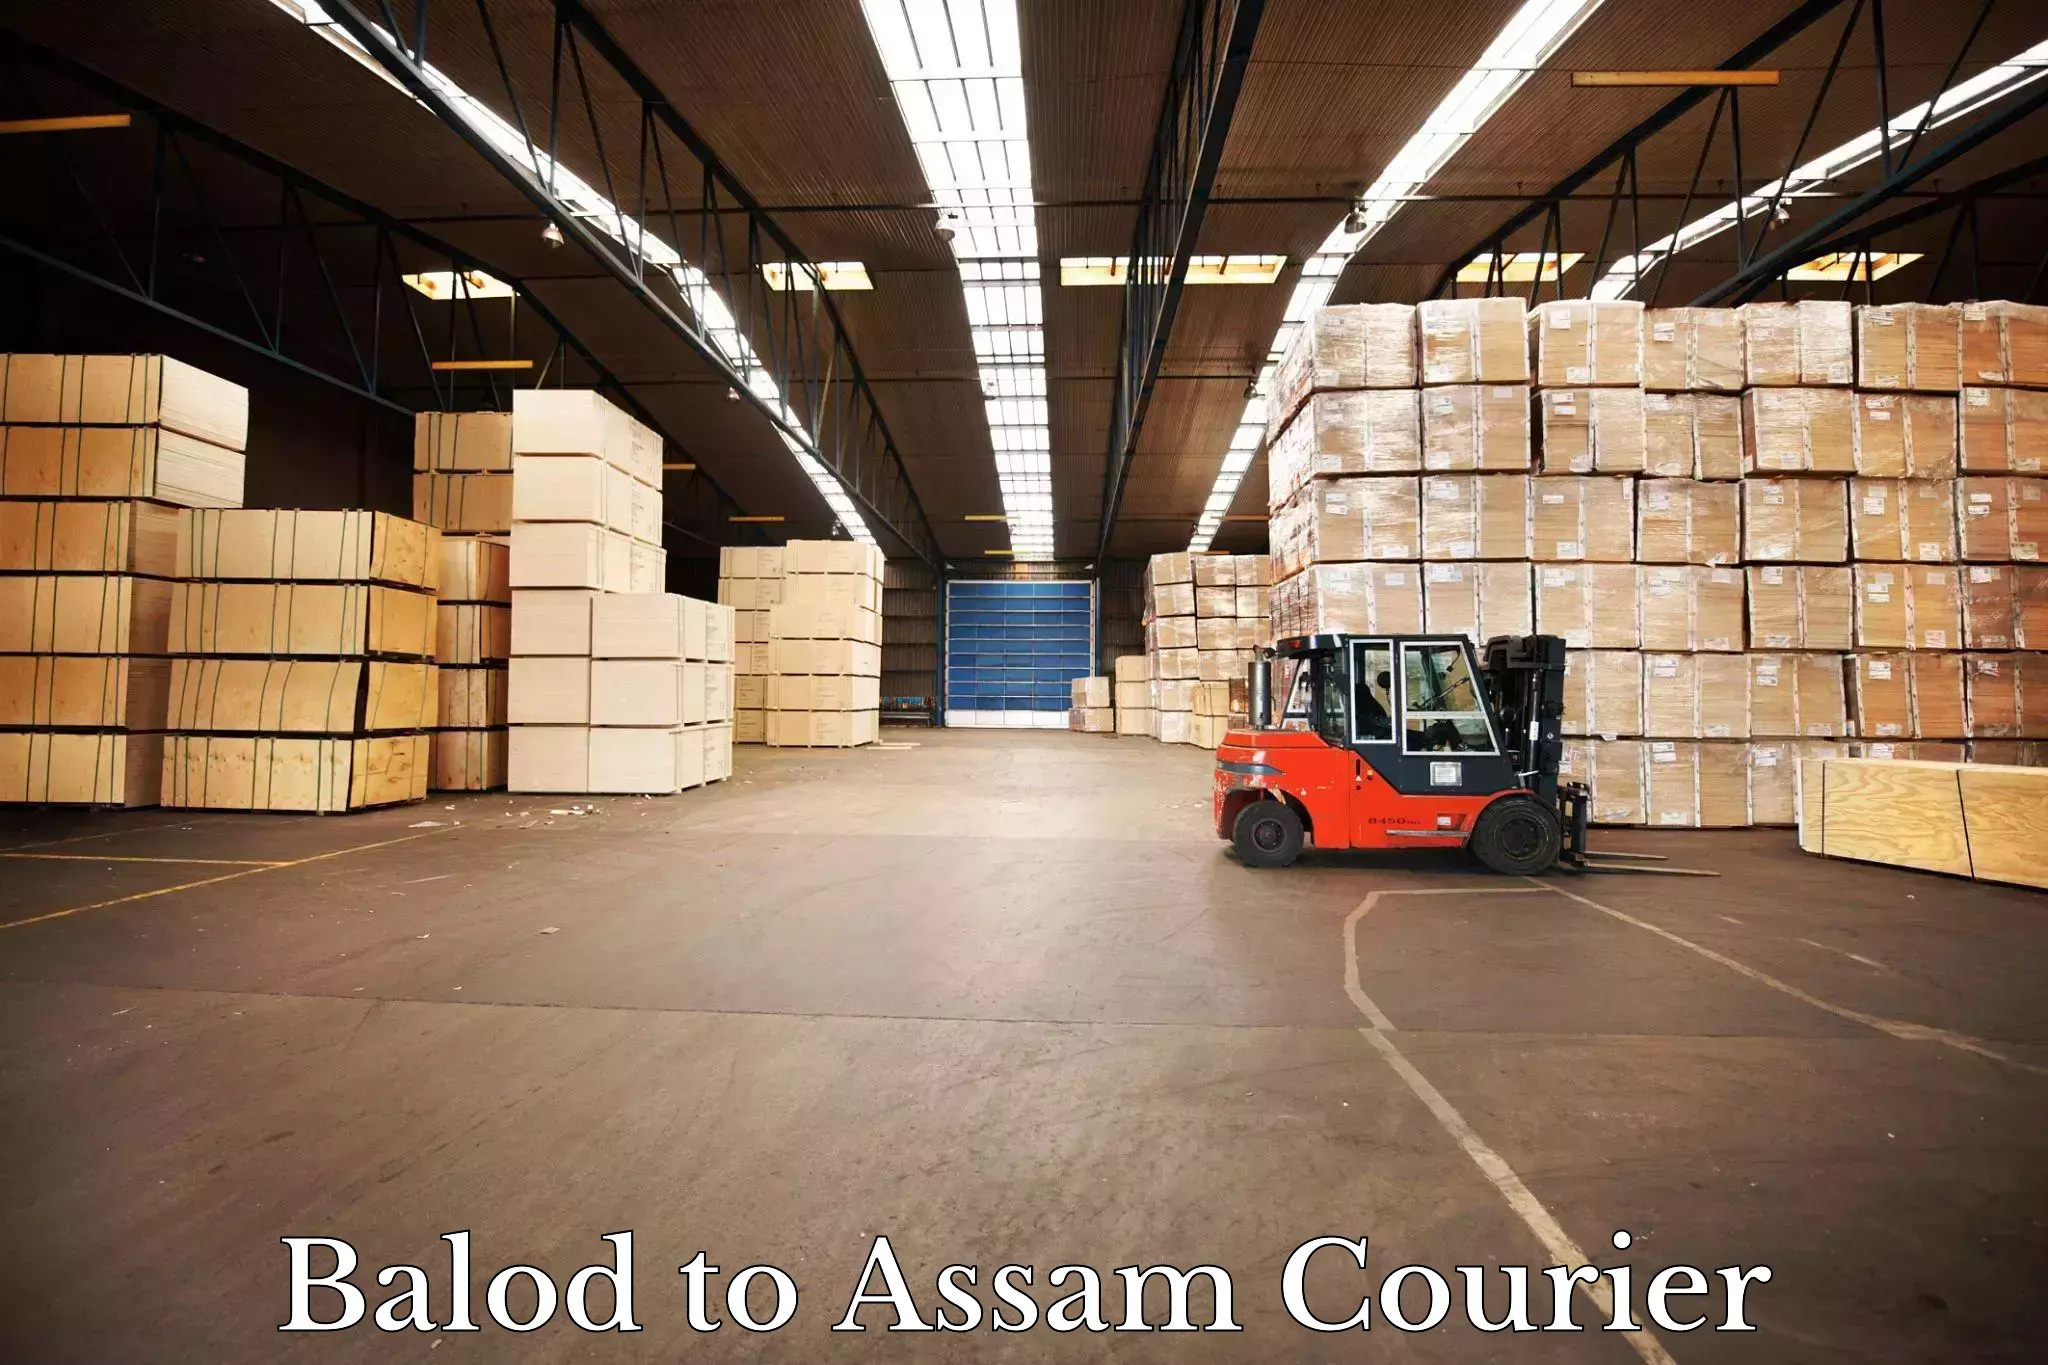 Quick dispatch service Balod to Assam